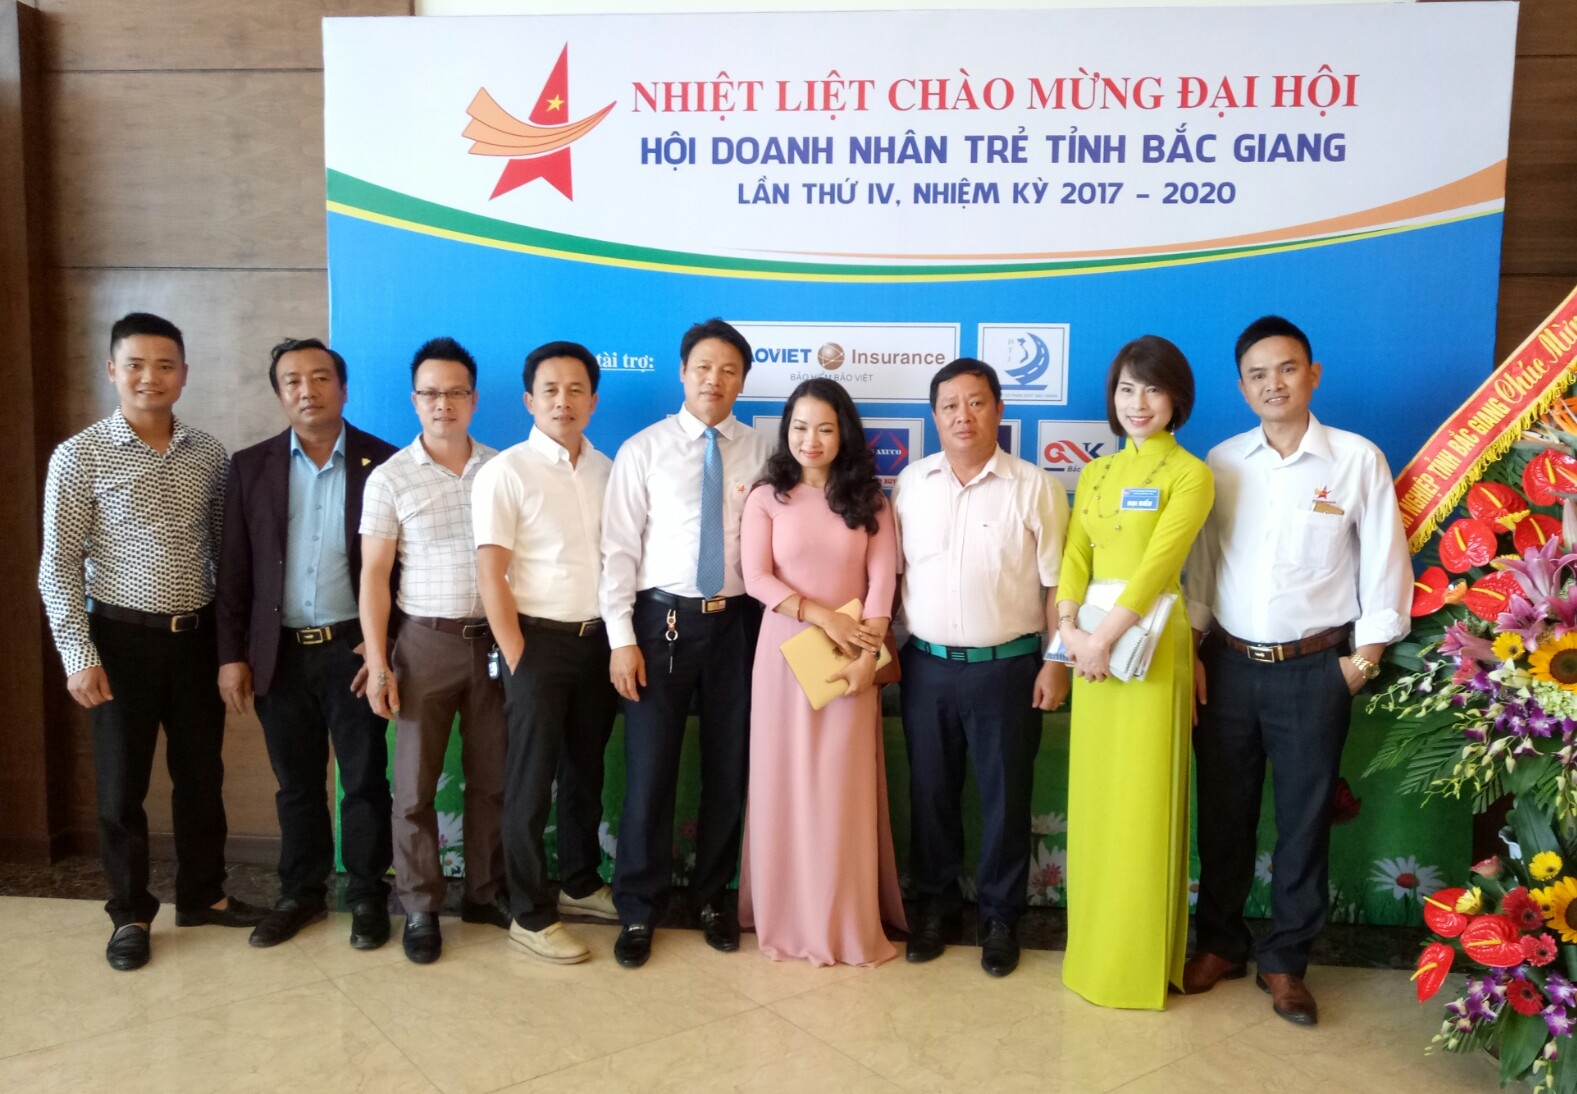 Hải Dương chúc mừng Đại hội Hội Doanh nhân trẻ tỉnh Bắc Giang lần thứ IV